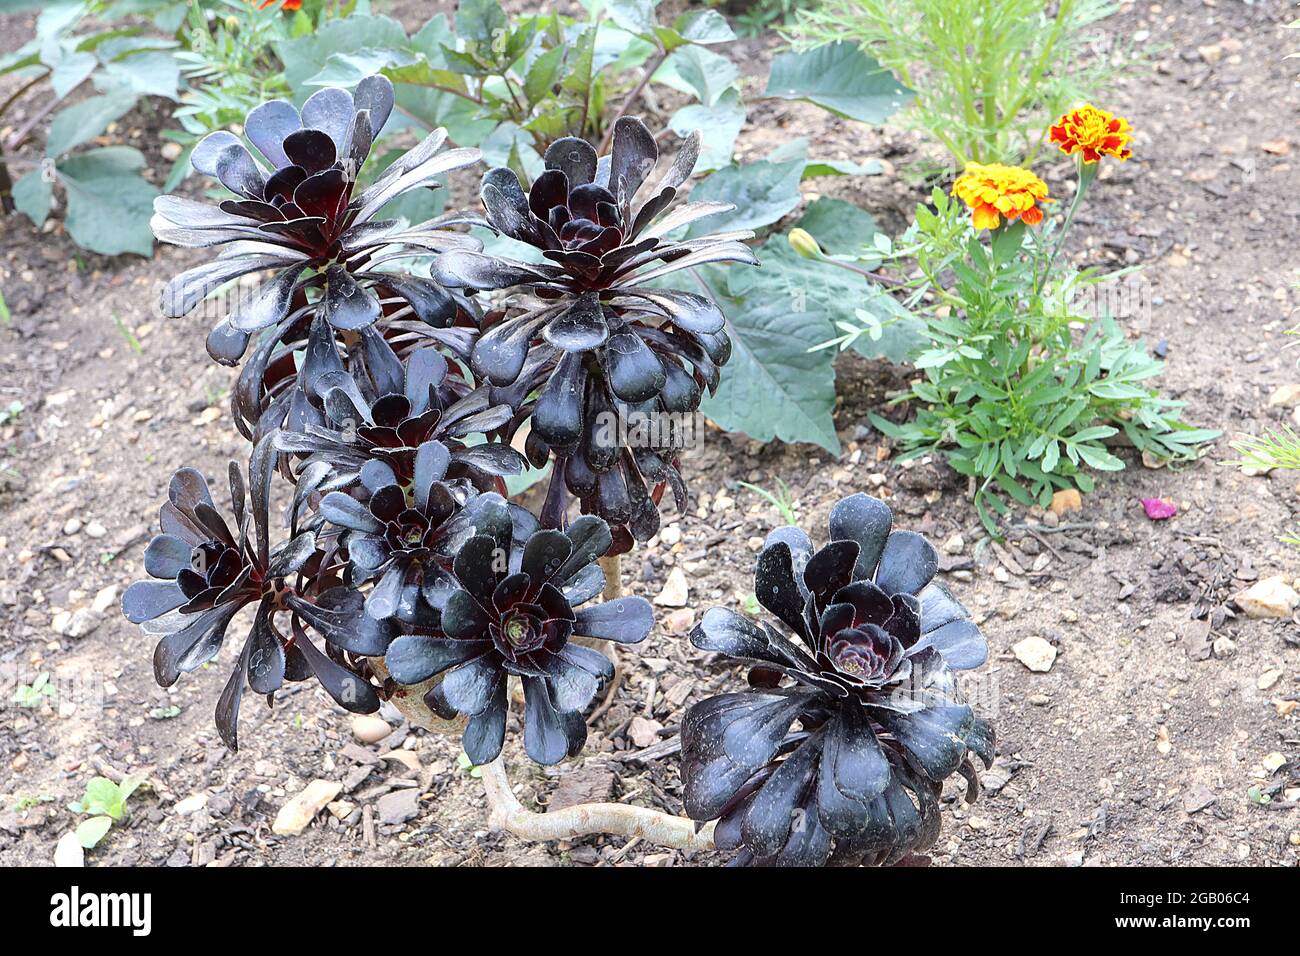 Aeonium arboreum ‘Black Rose’ houseleek Tree Black Rose – Rosetten aus löffelförmigen schwarzen Blättern auf dicken Stielen, Juni, England, Großbritannien Stockfoto